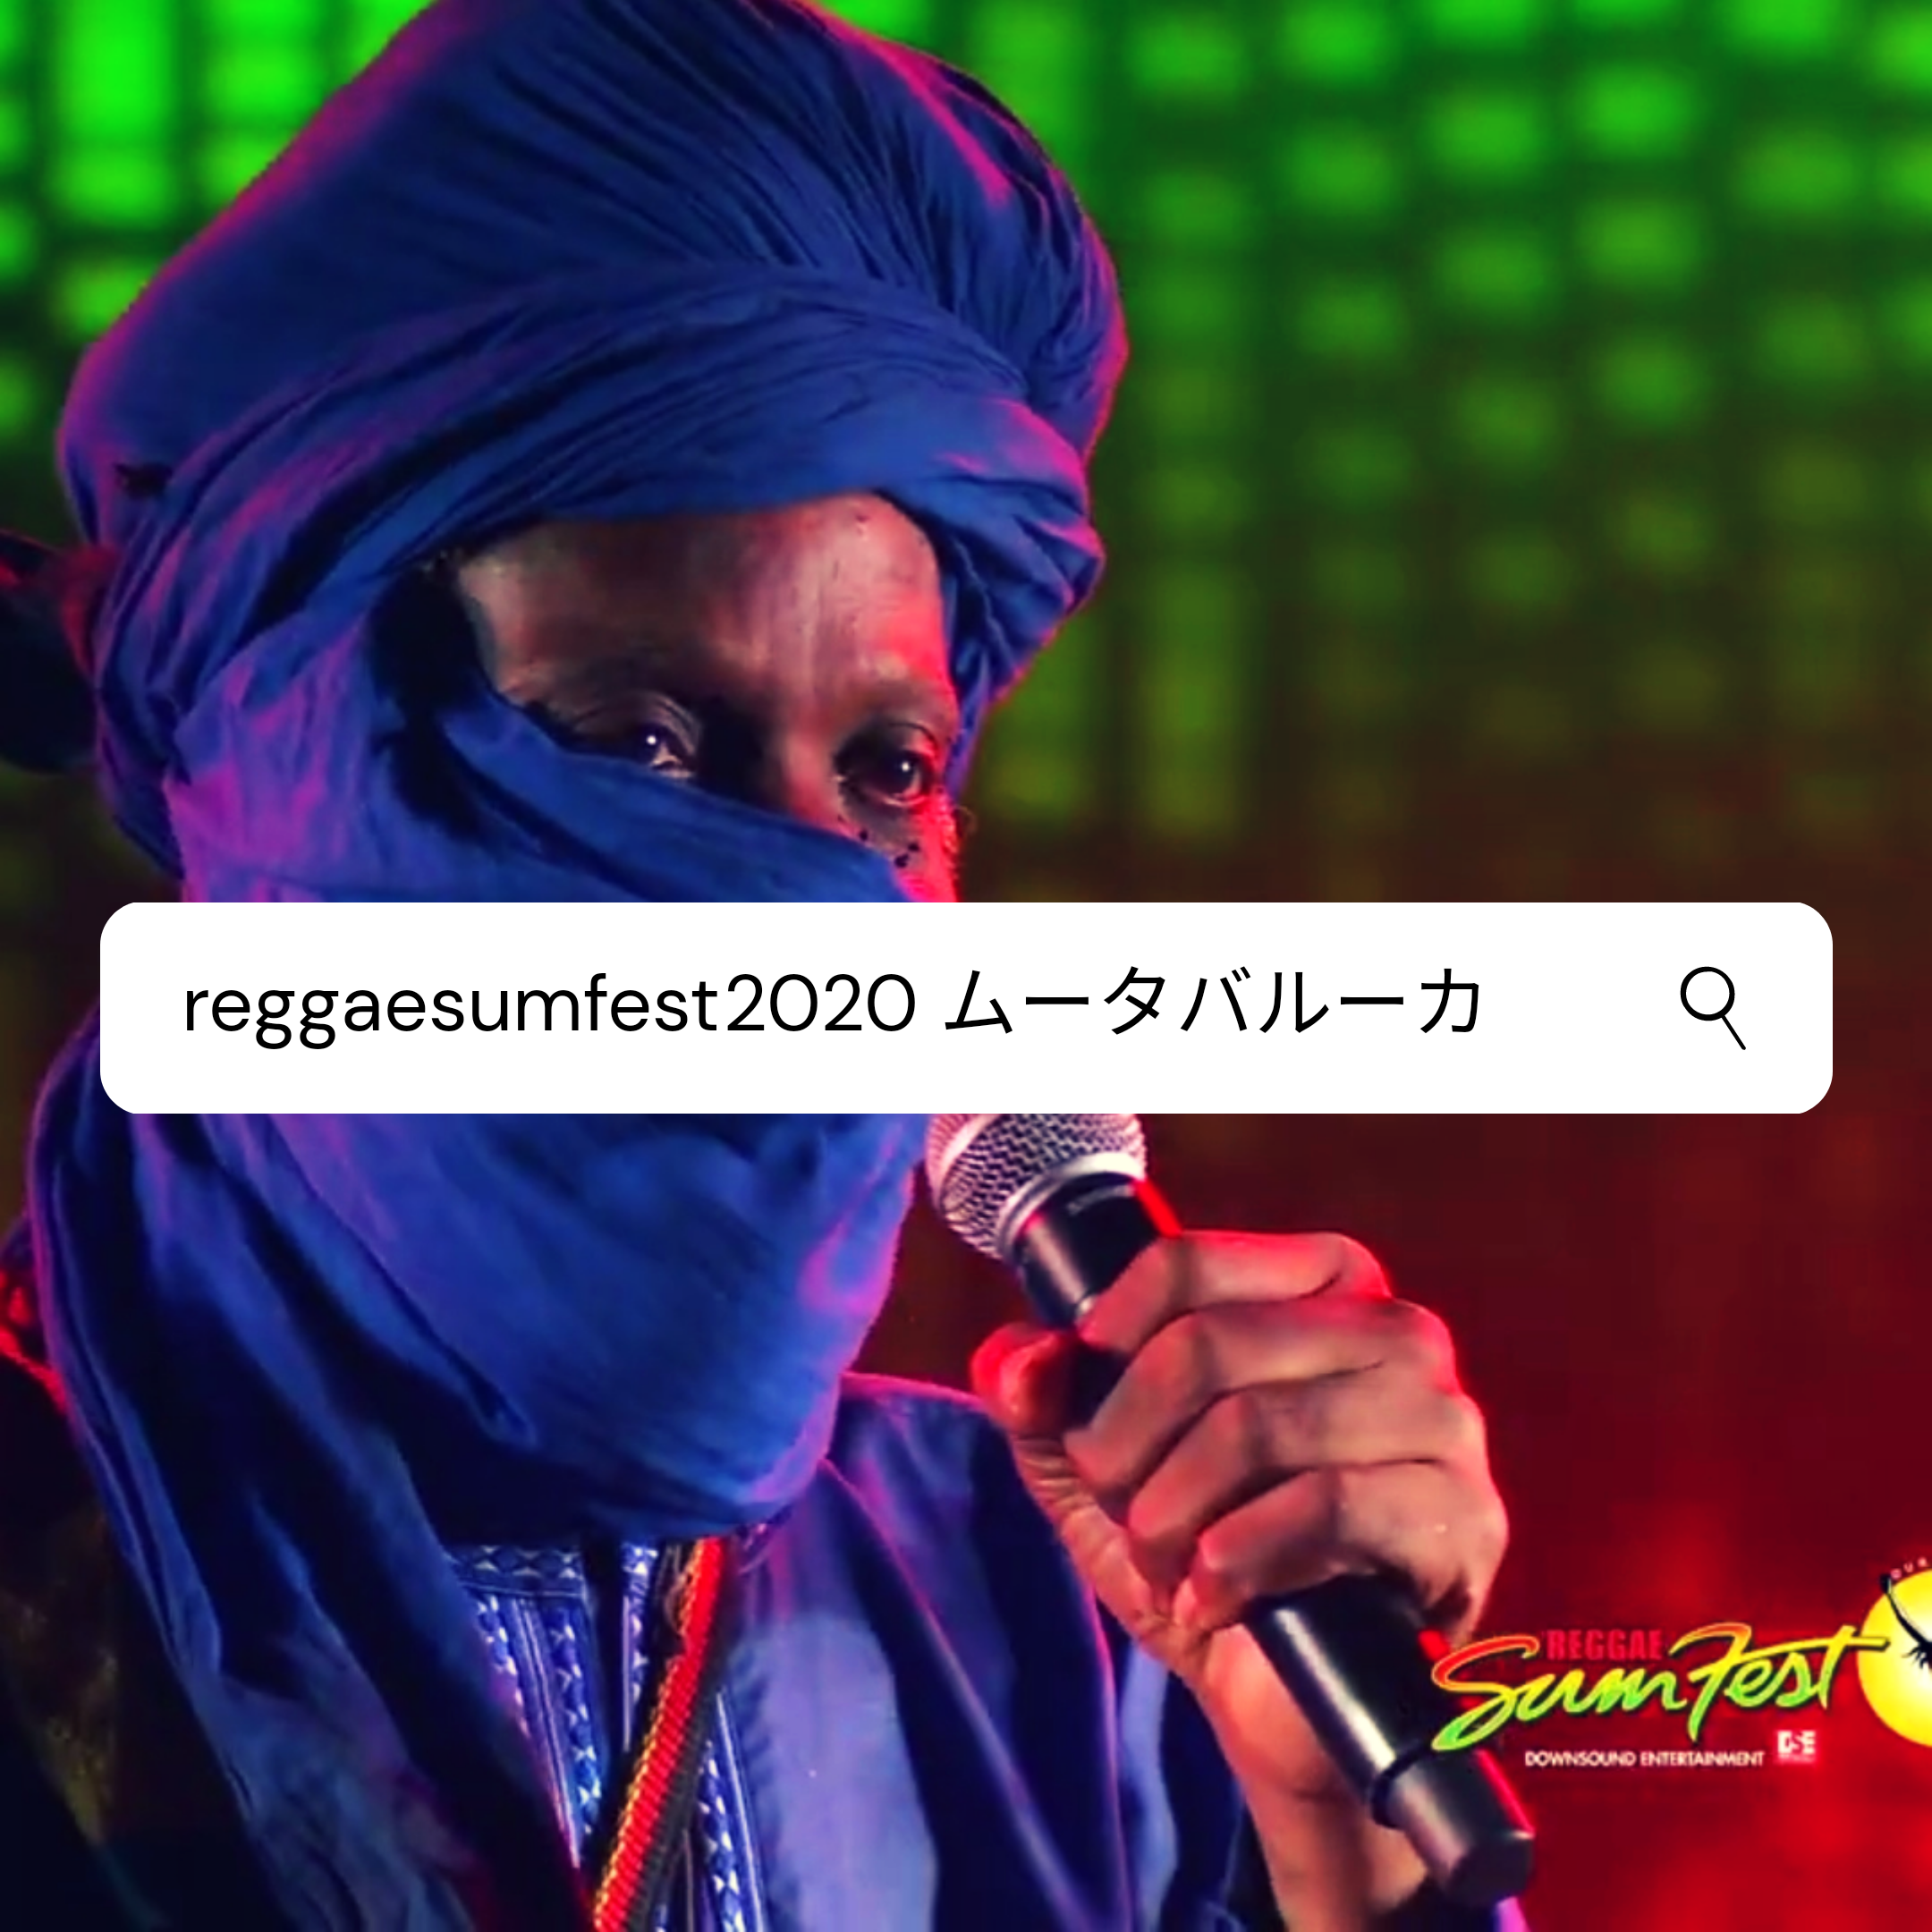 Reggae Sumfest 2020 ムータバルーカの冒頭あいさつがカッコよすぎる